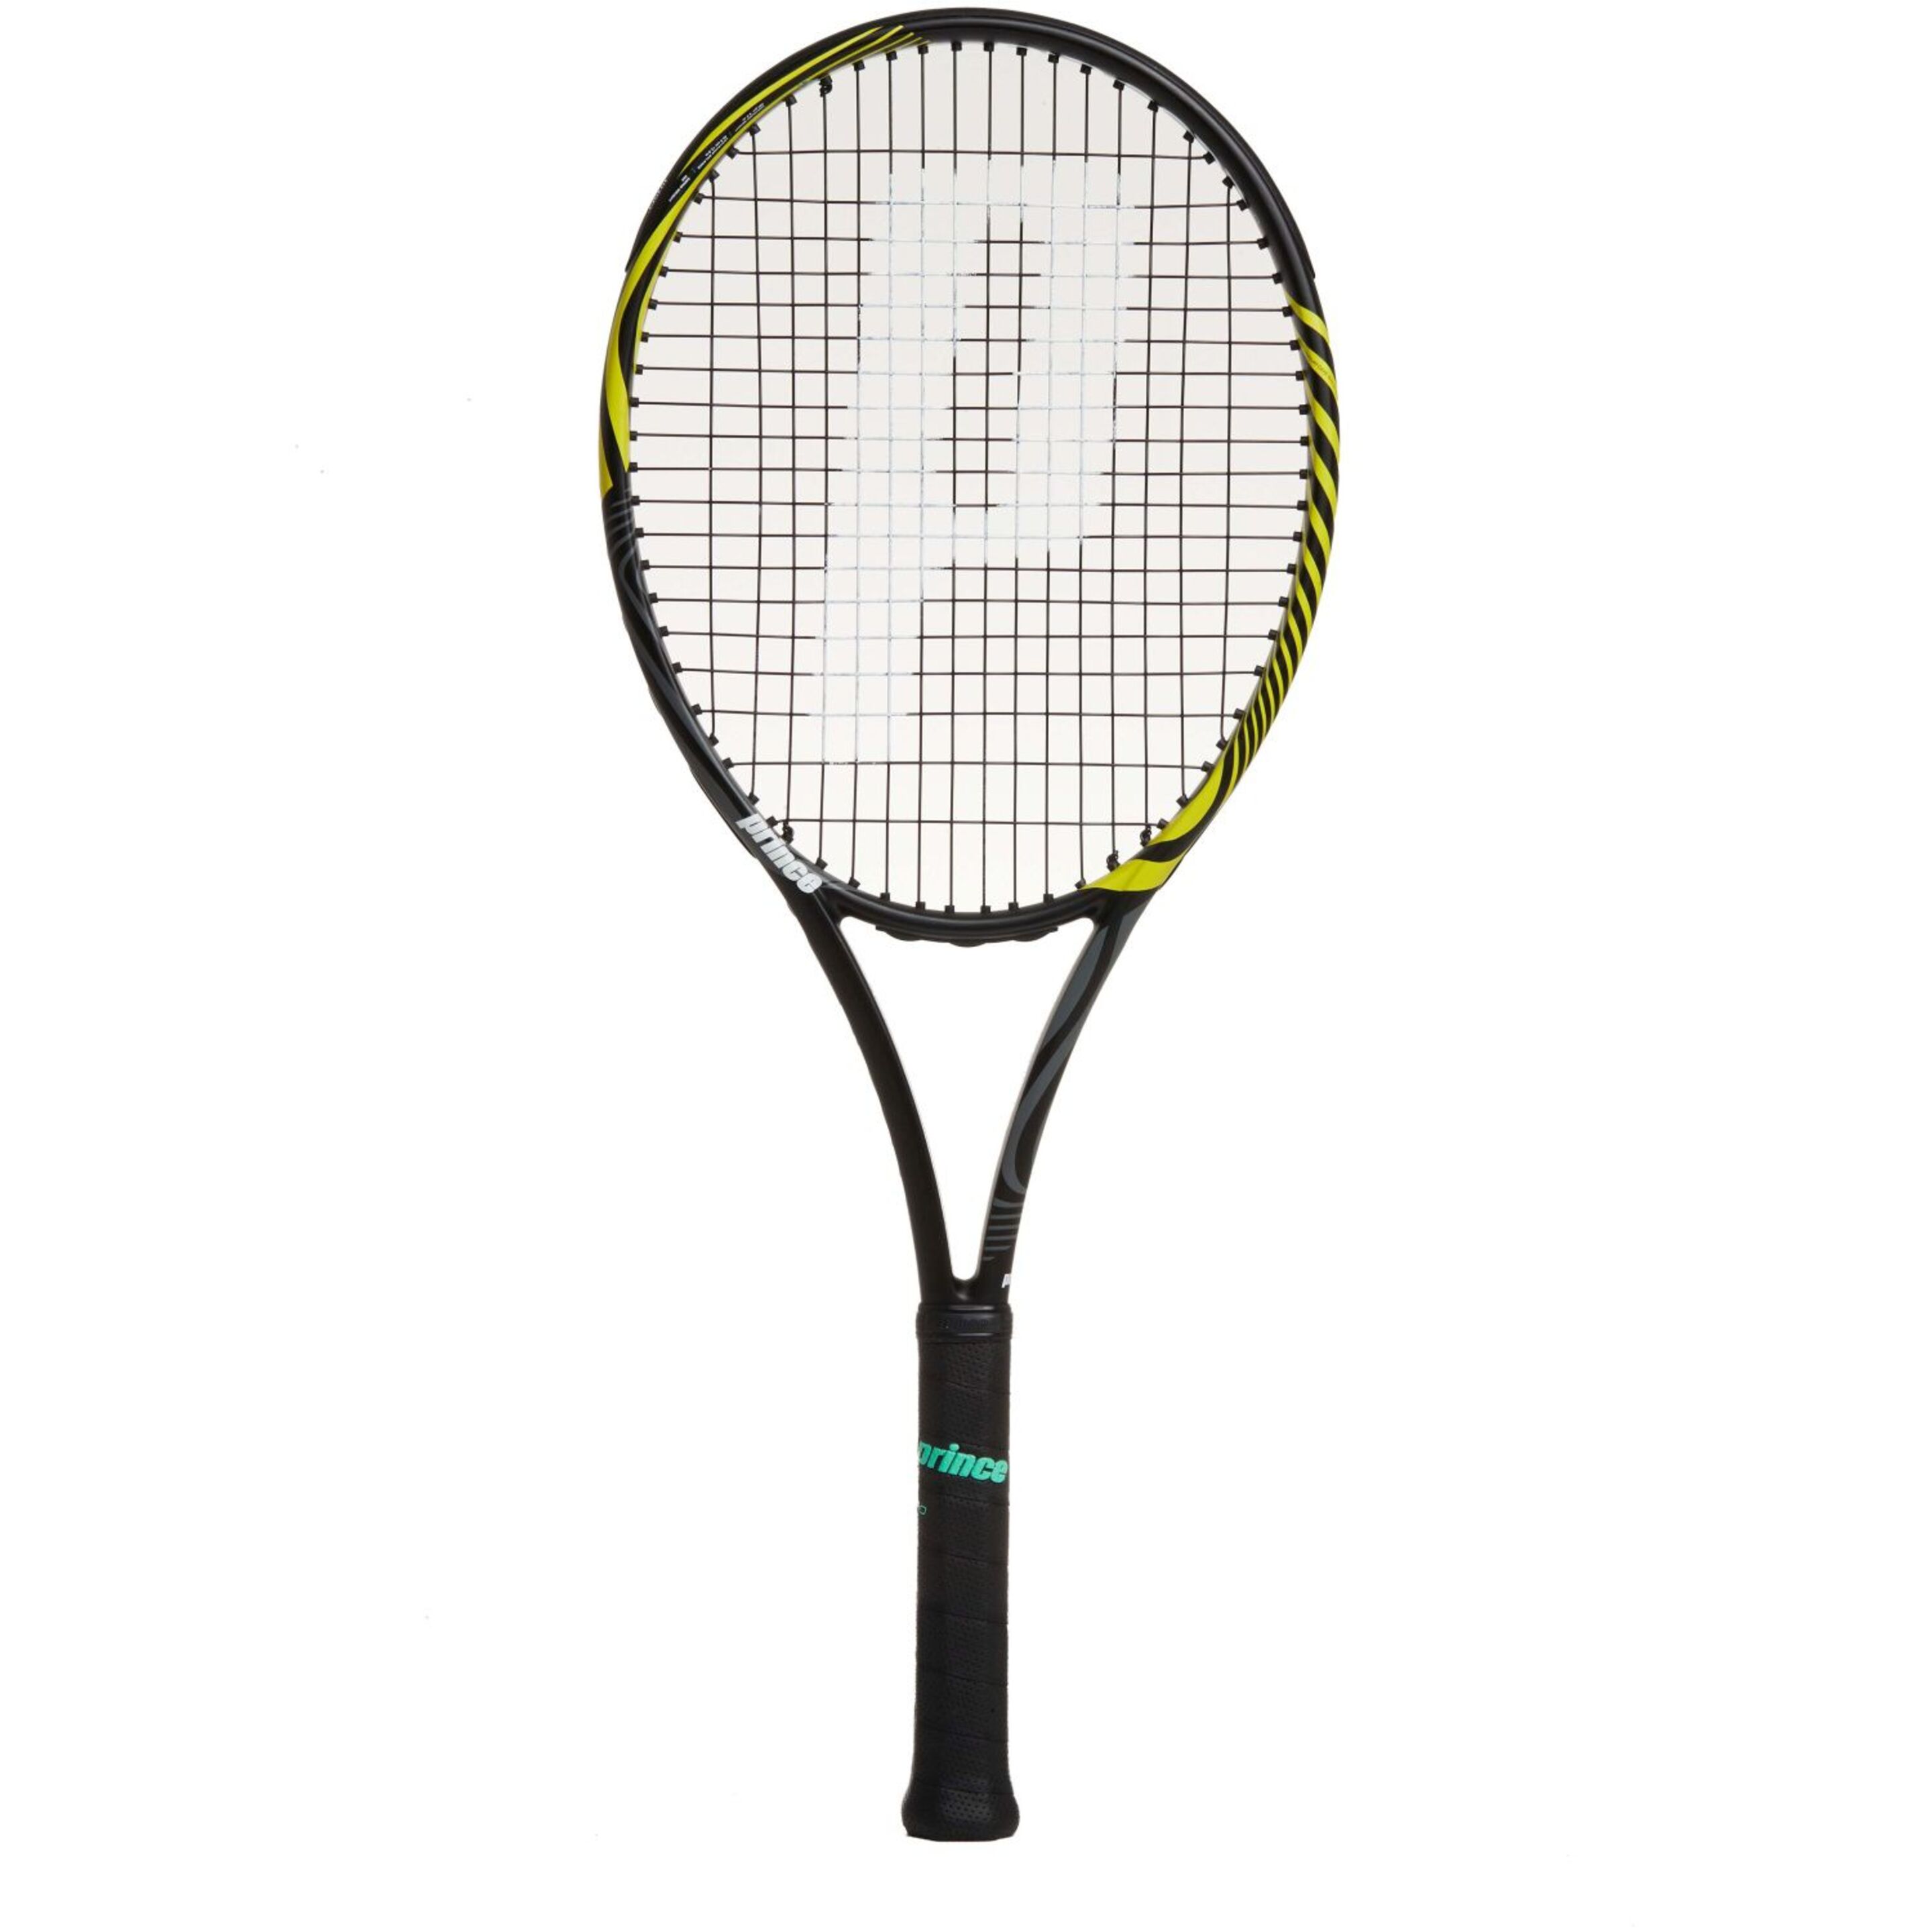 Raqueta De Tenis Prince Ripcord 100 280 G (encordada Y Con Funda) - amarillo-negro - 